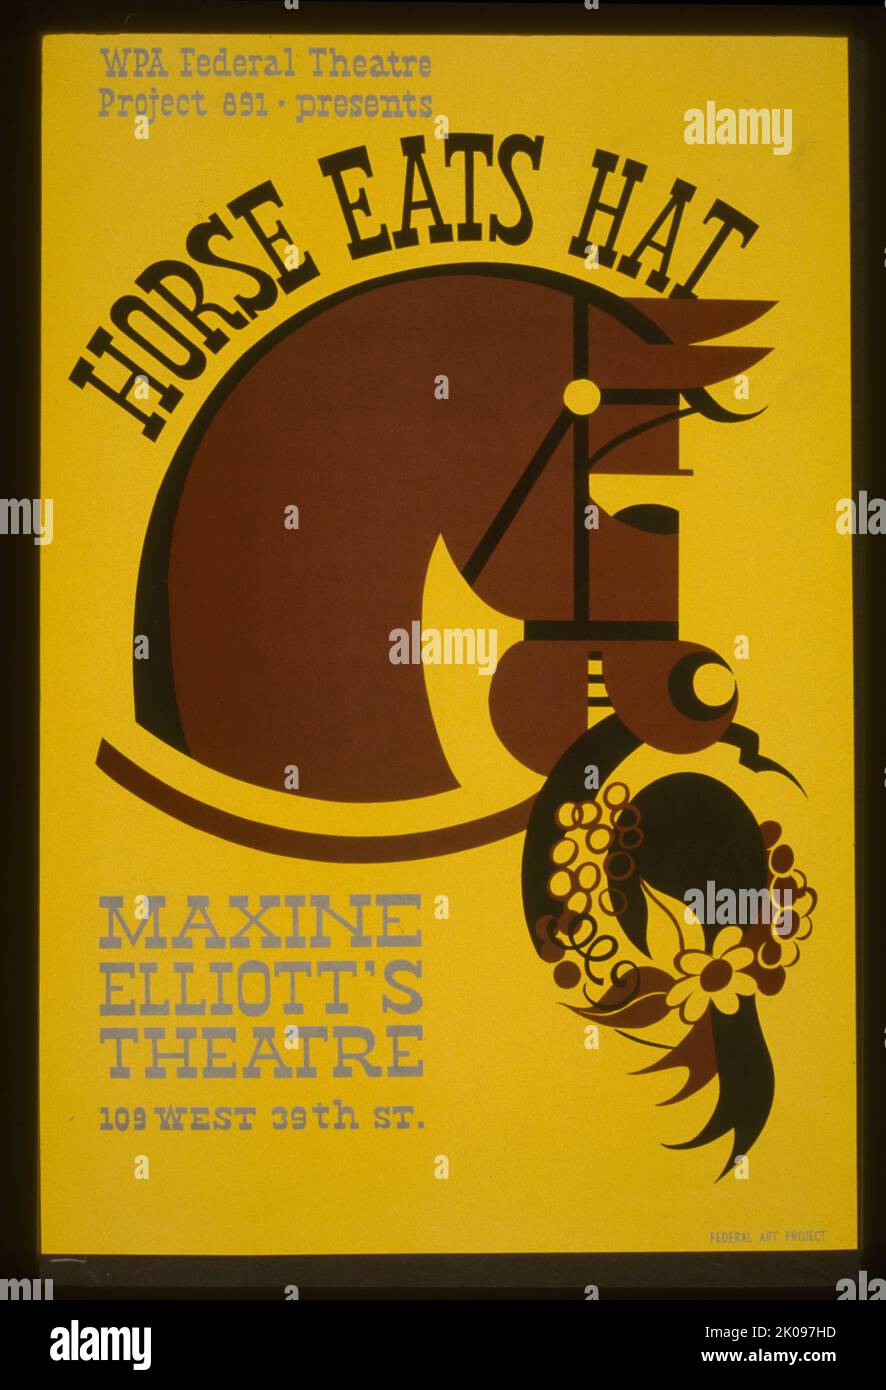 Faksimile des Posters für die Präsentation des Horse Eats Hats im Maxine Elliott's Theatre, 109 West 39. St., zeigt ein Pferd, das einen Hut isst. WPA Federal Theatre Project 891 im Maxine Elliott's Theatre. Stockfoto